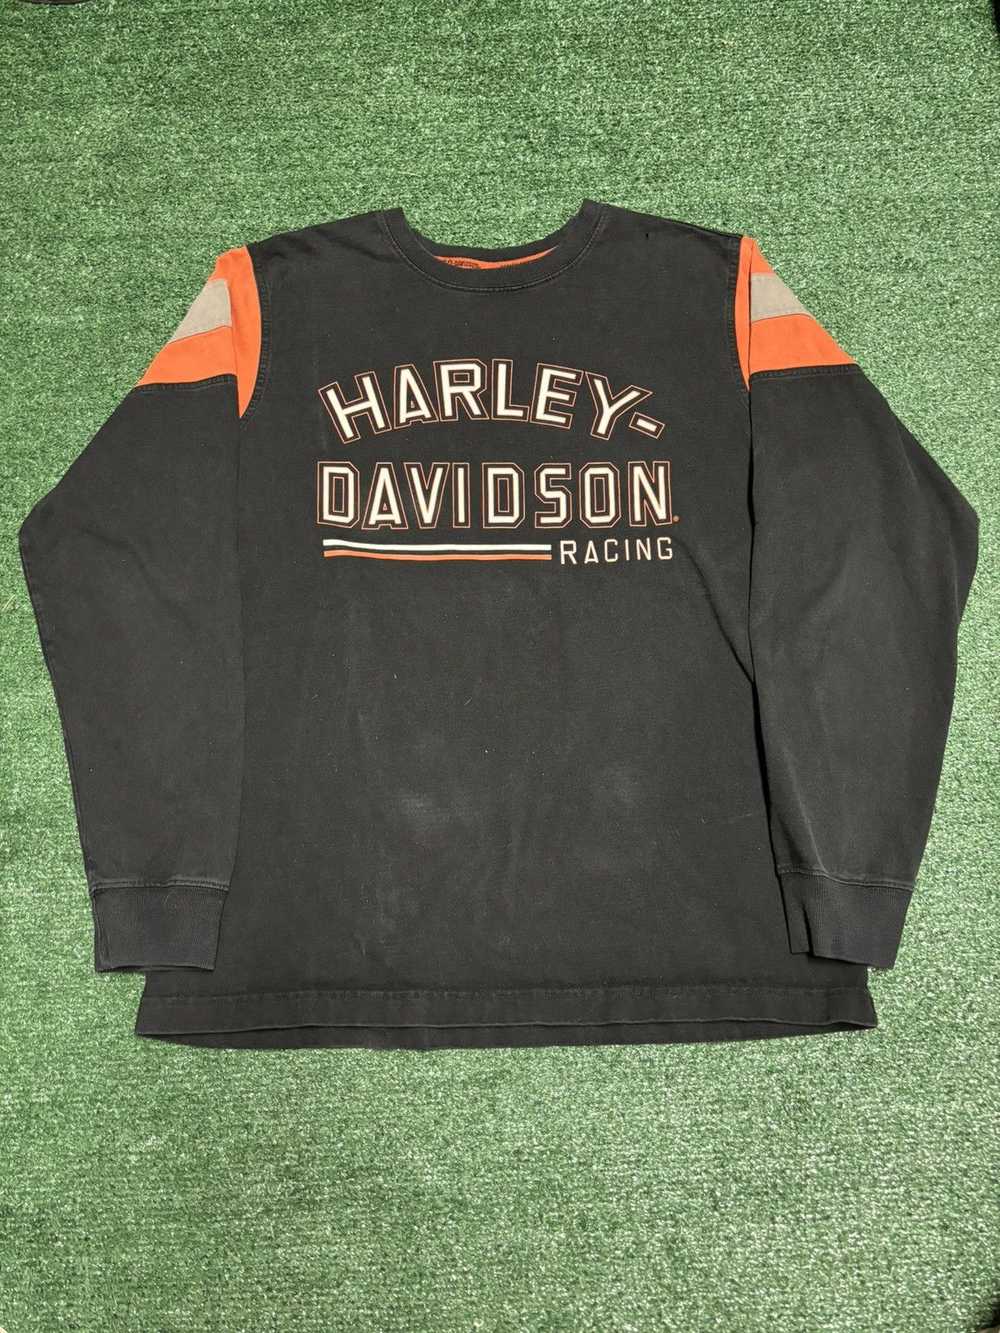 Harley Davidson Harley Davidson Racing Long Sleev… - image 1